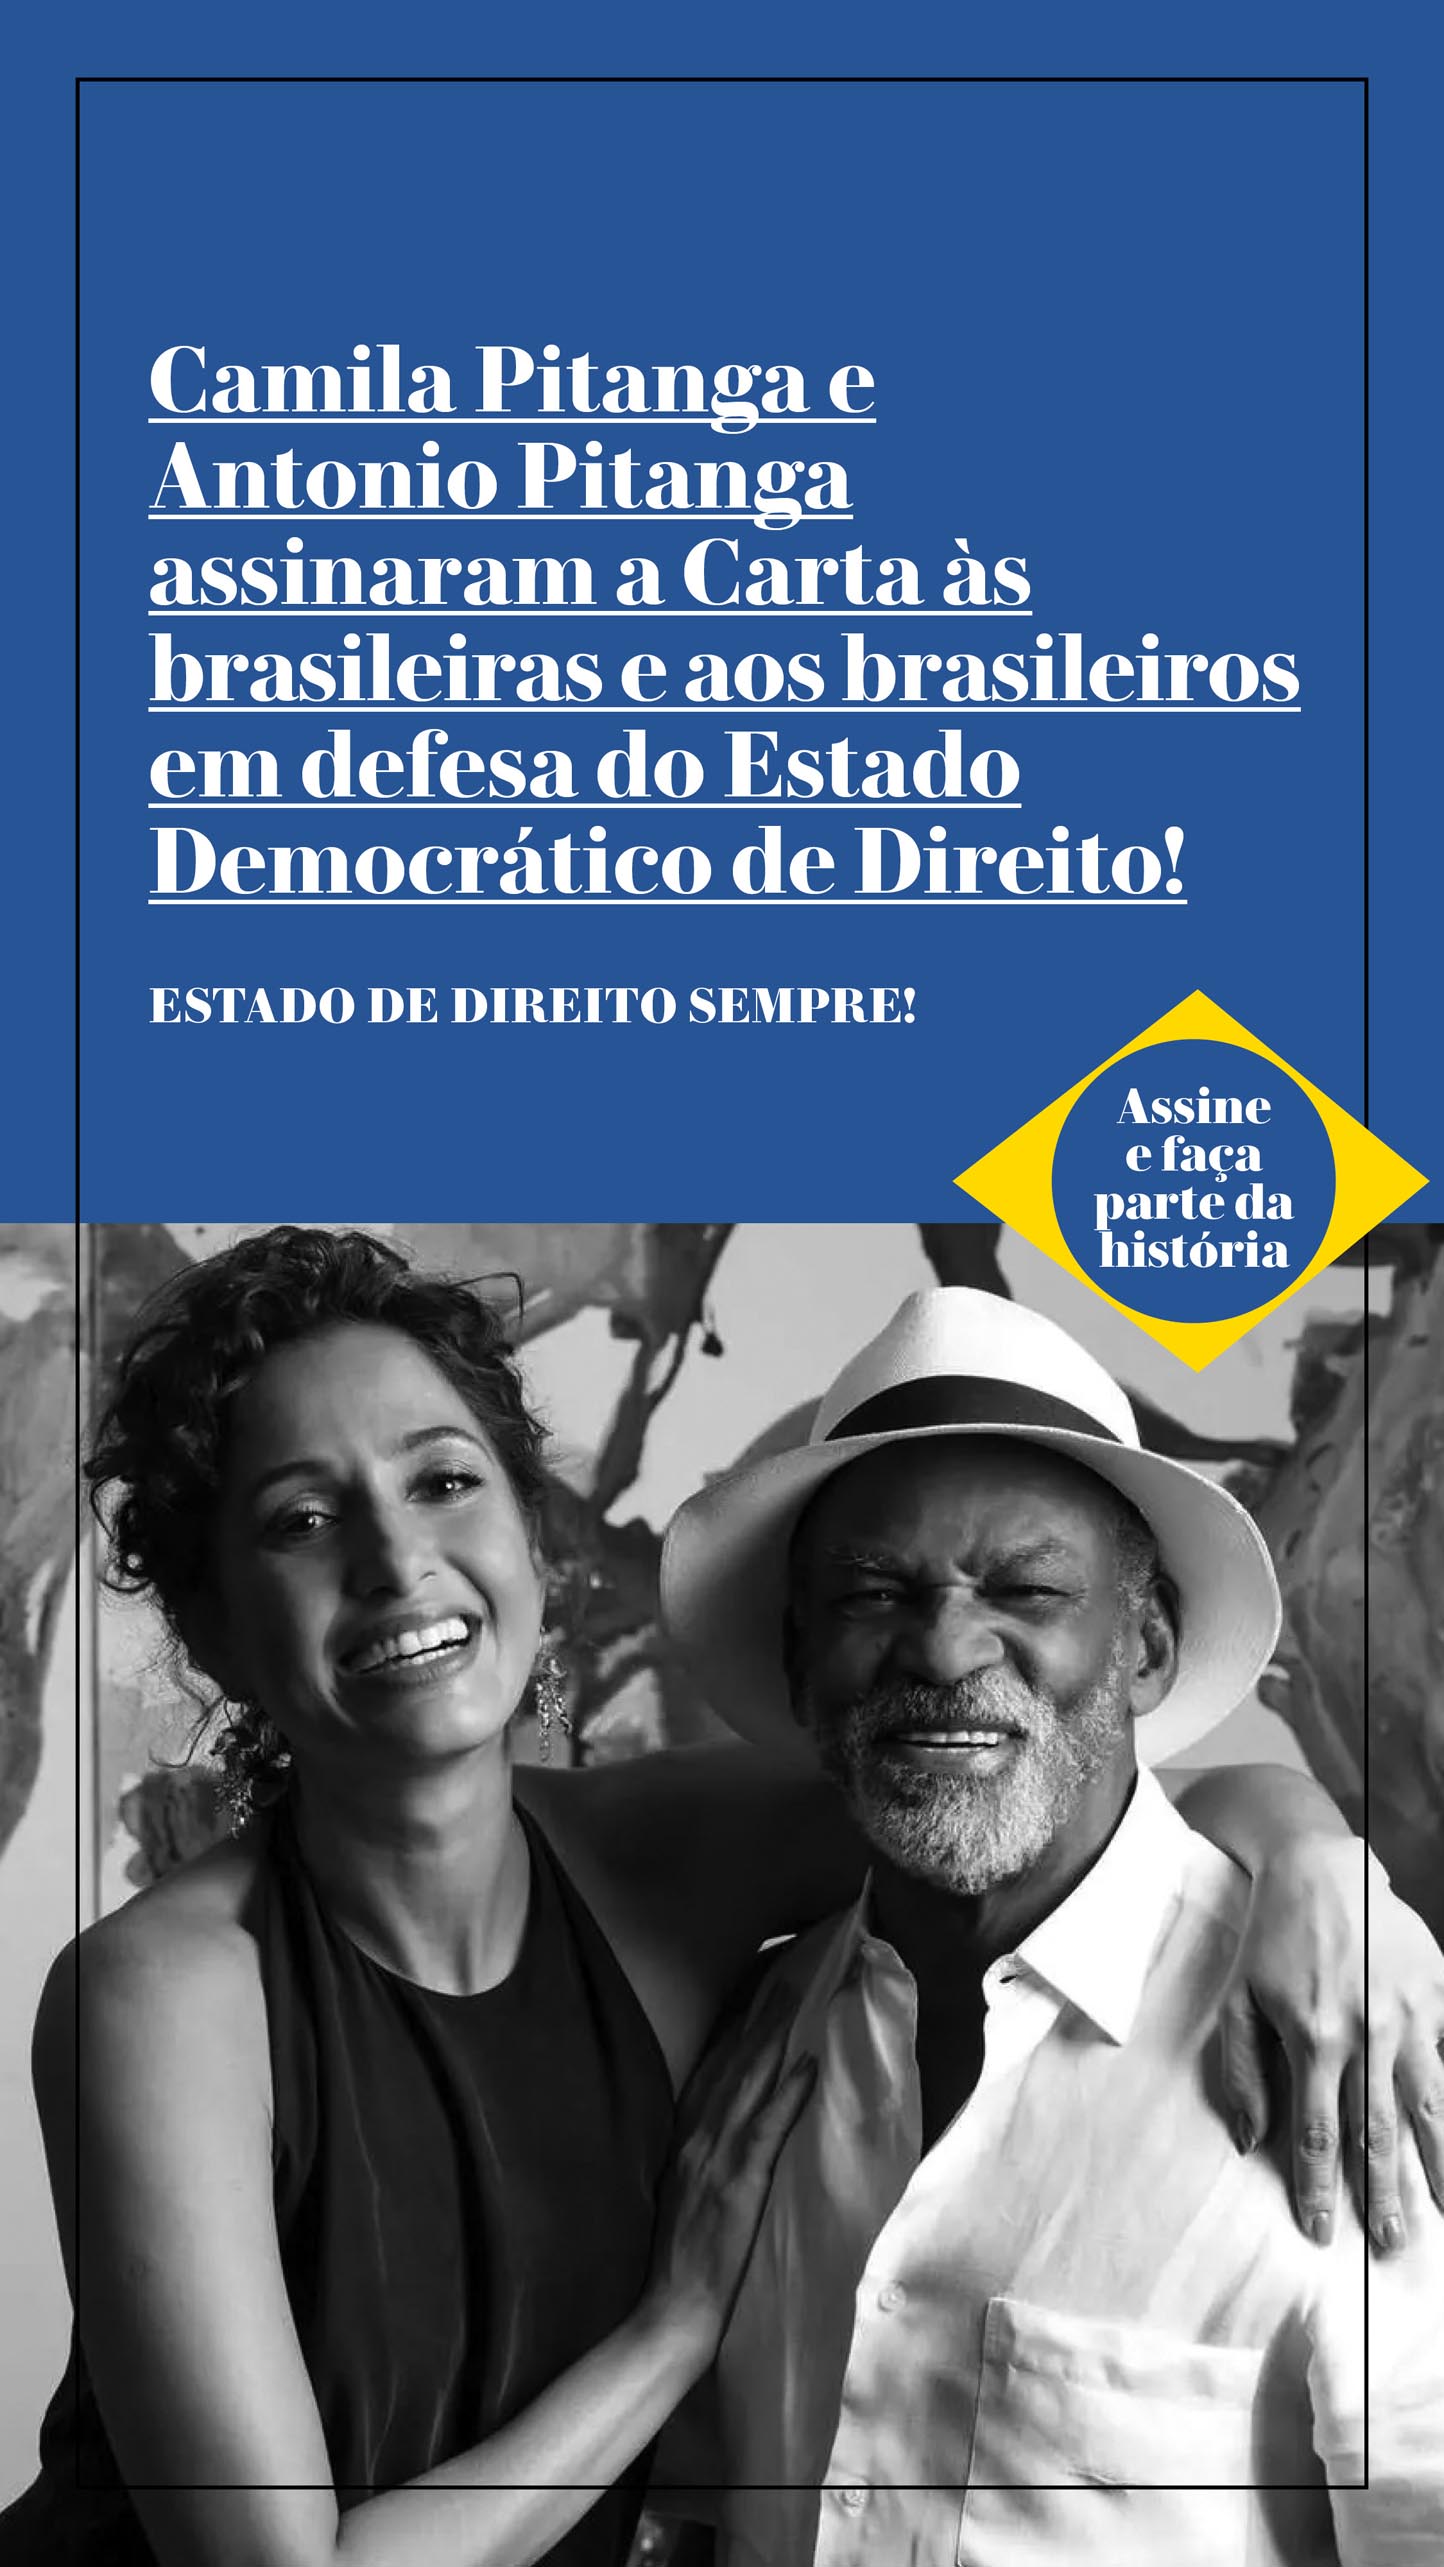 Camila Pitanga e Antonio Pitanga assinaram a Carta às brasileiras e aos brasileiros em defesa do Estado Democrático de Direito!